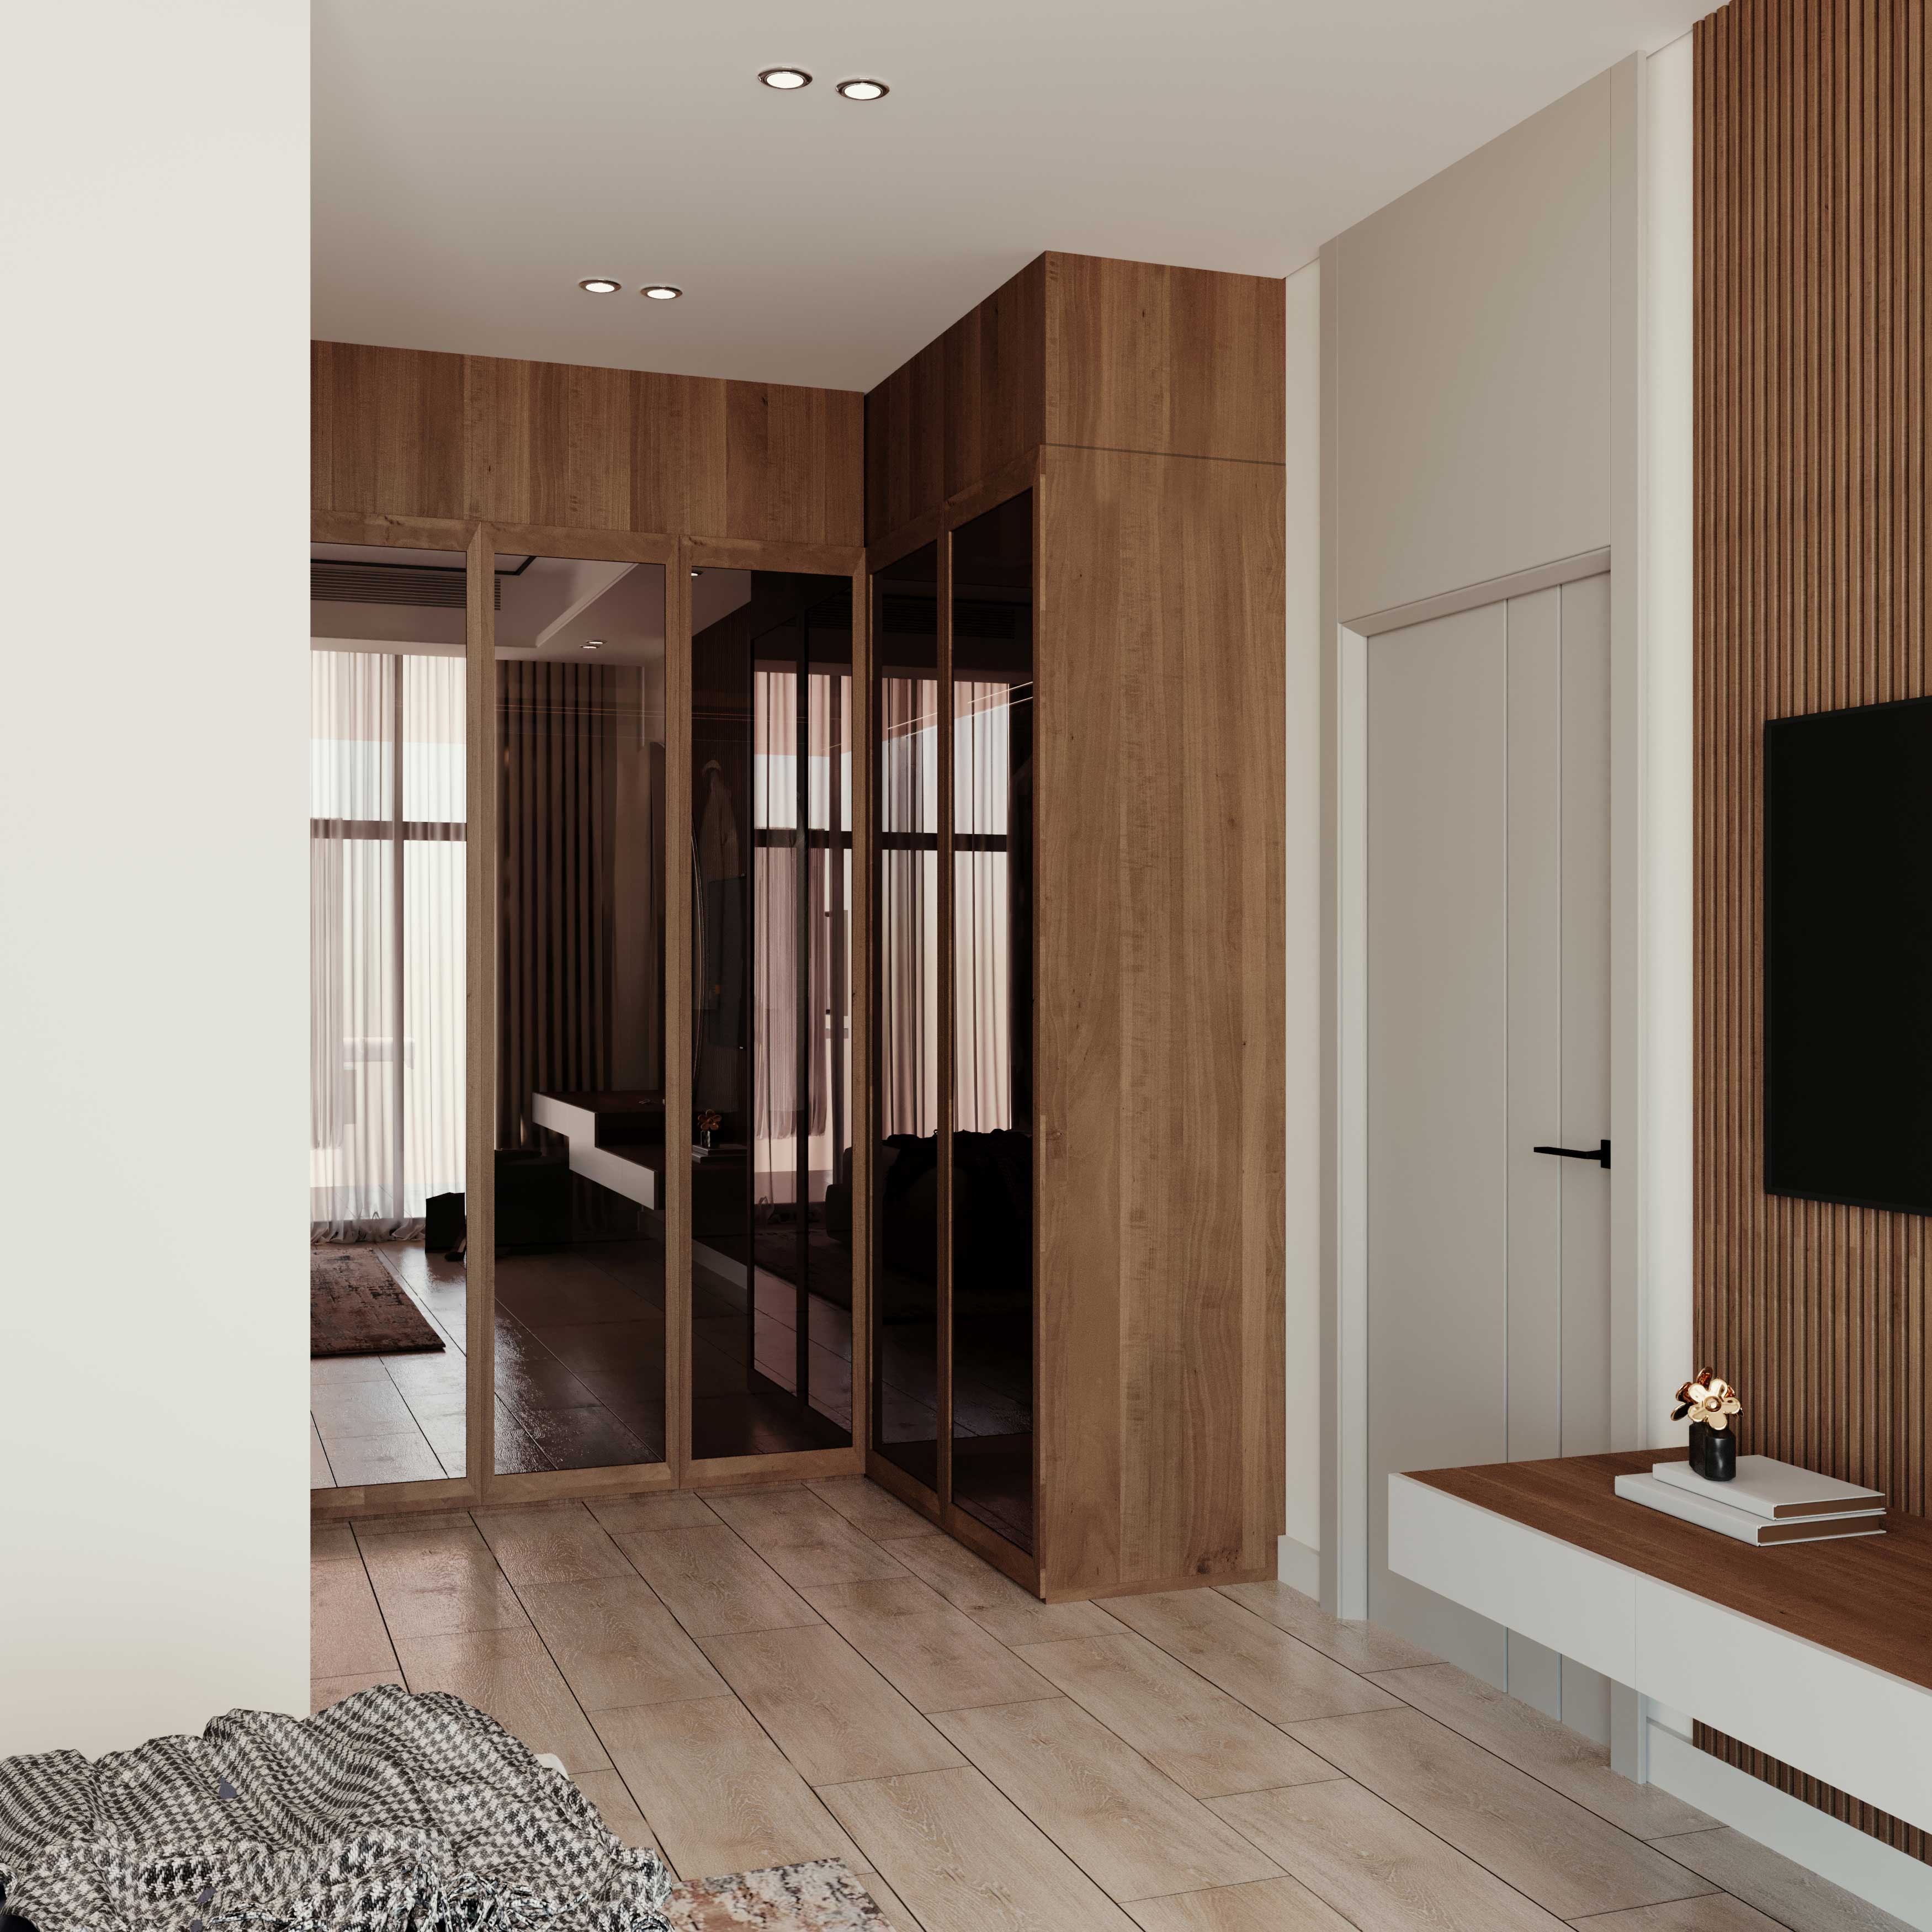 Bedroom Design 3